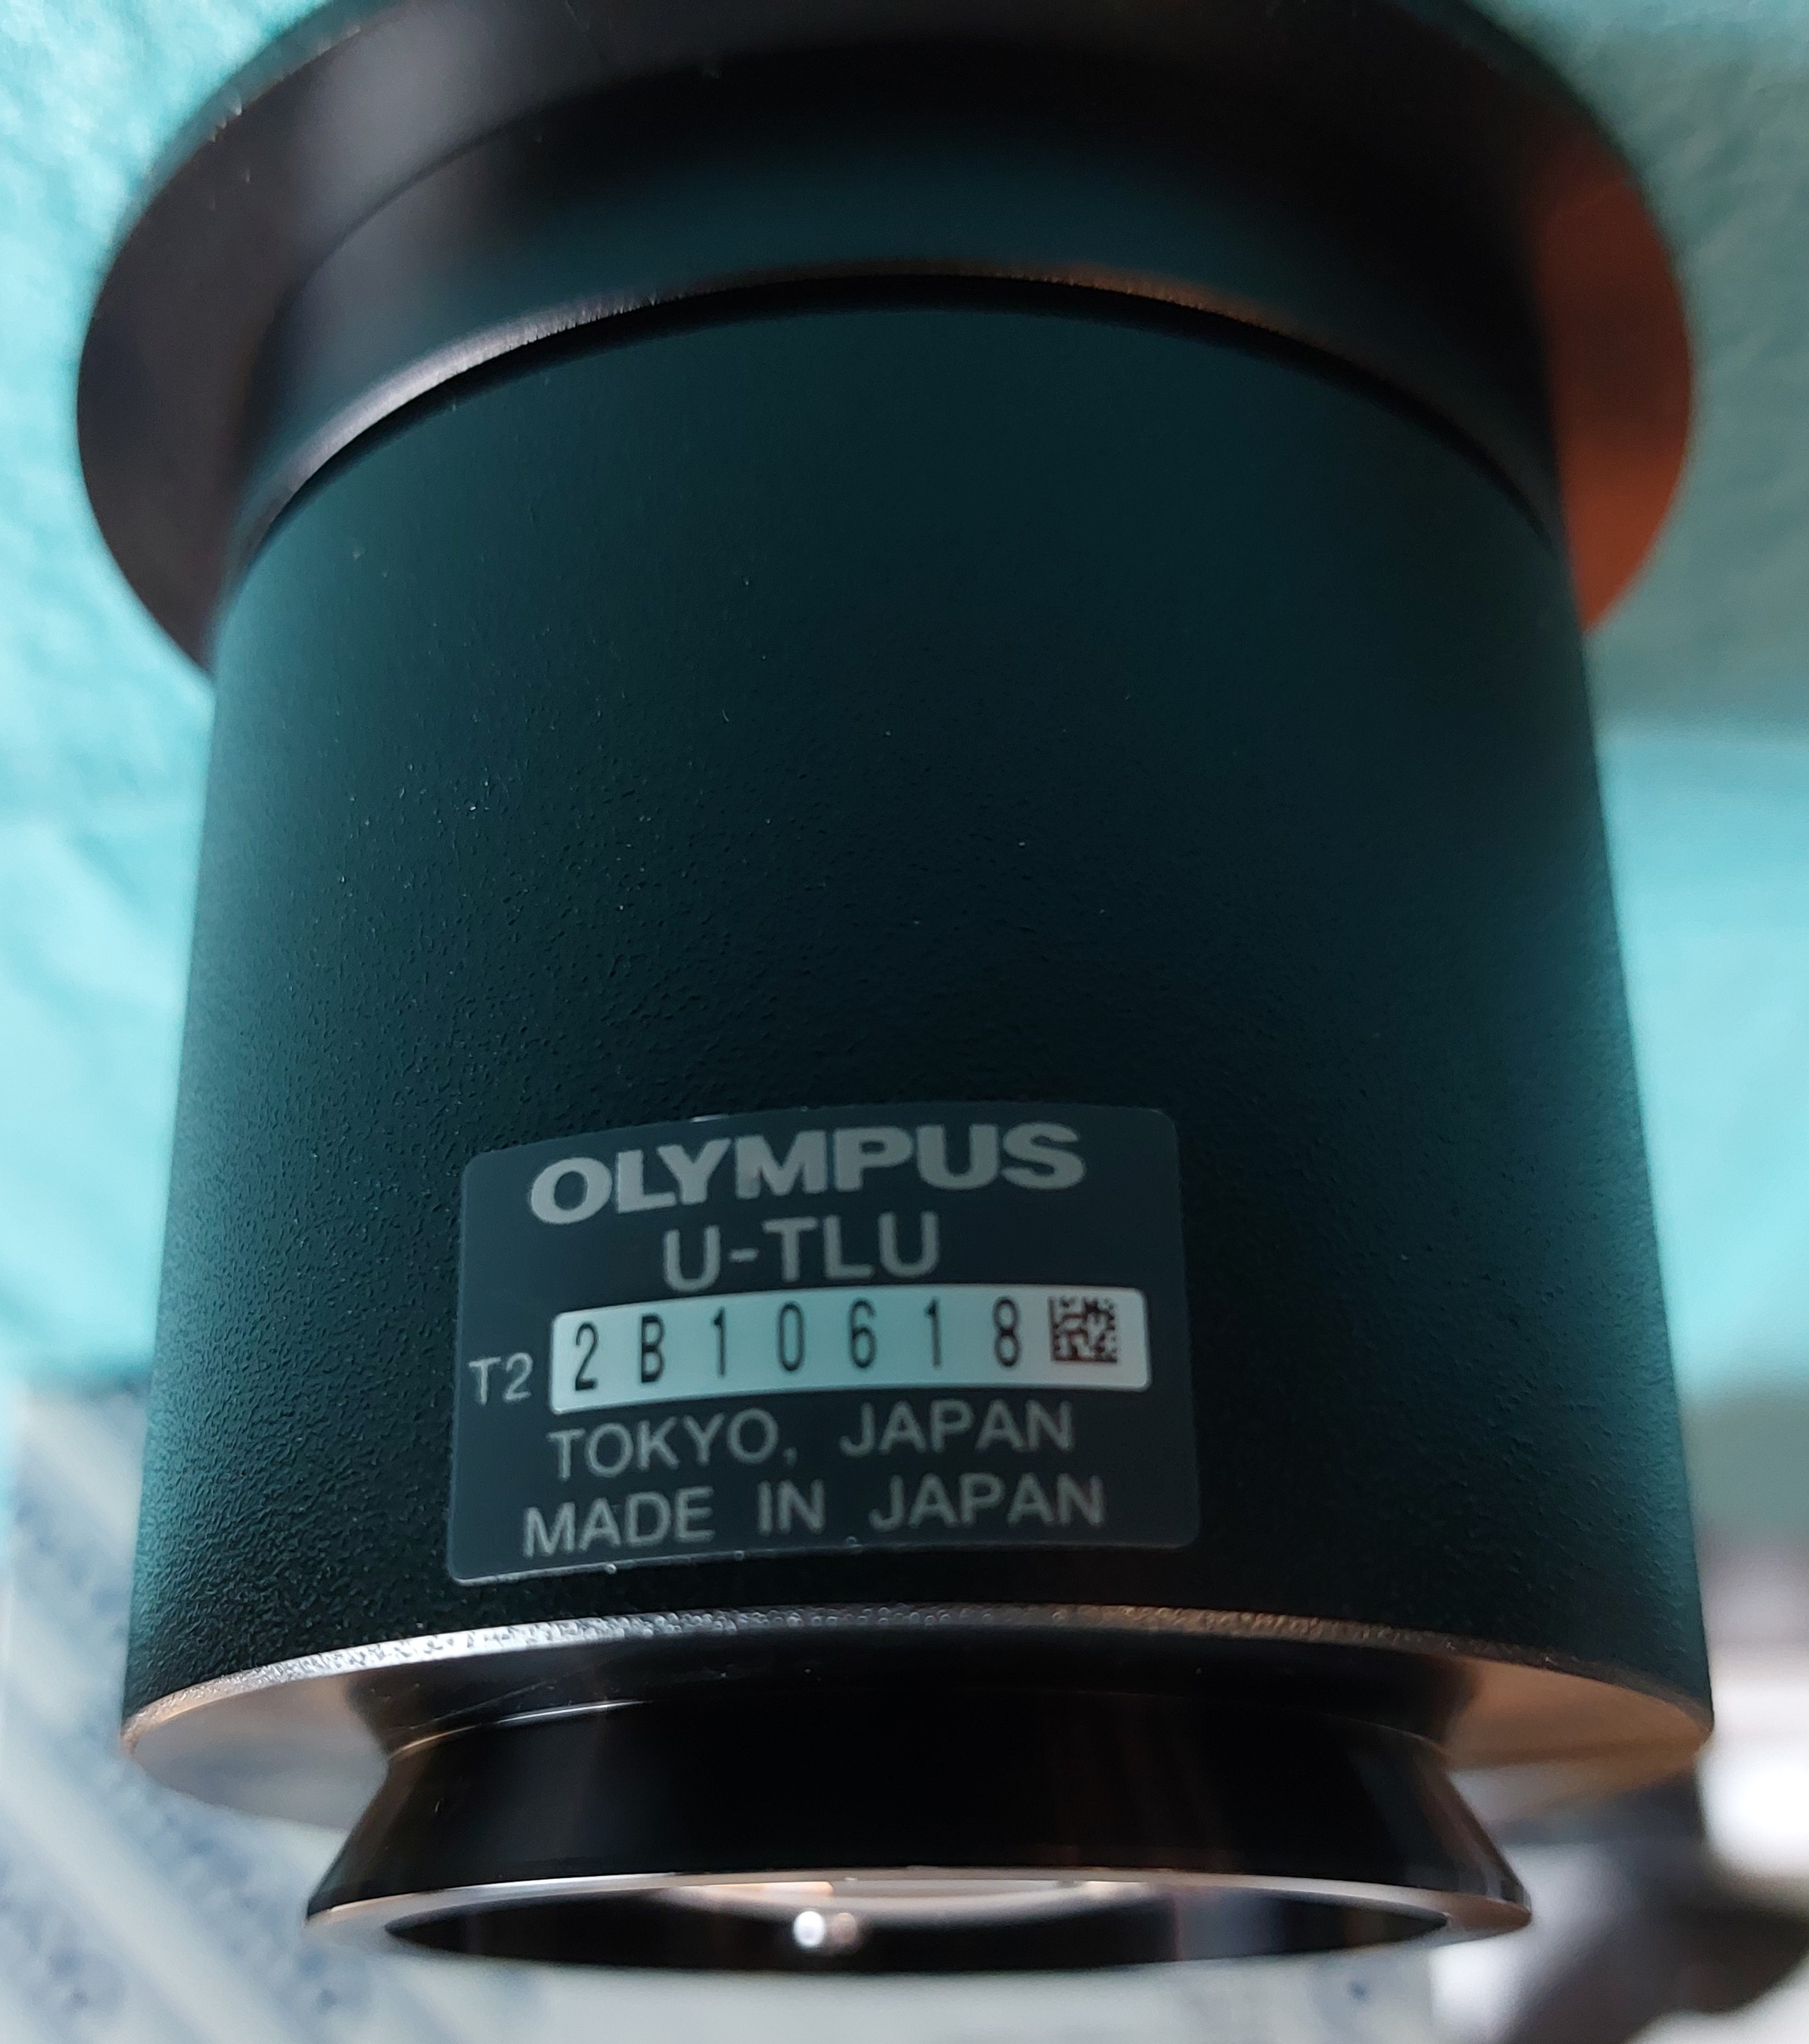 Olympus Tubuslinse mit einem Port, 180 mm Brennweite, neu